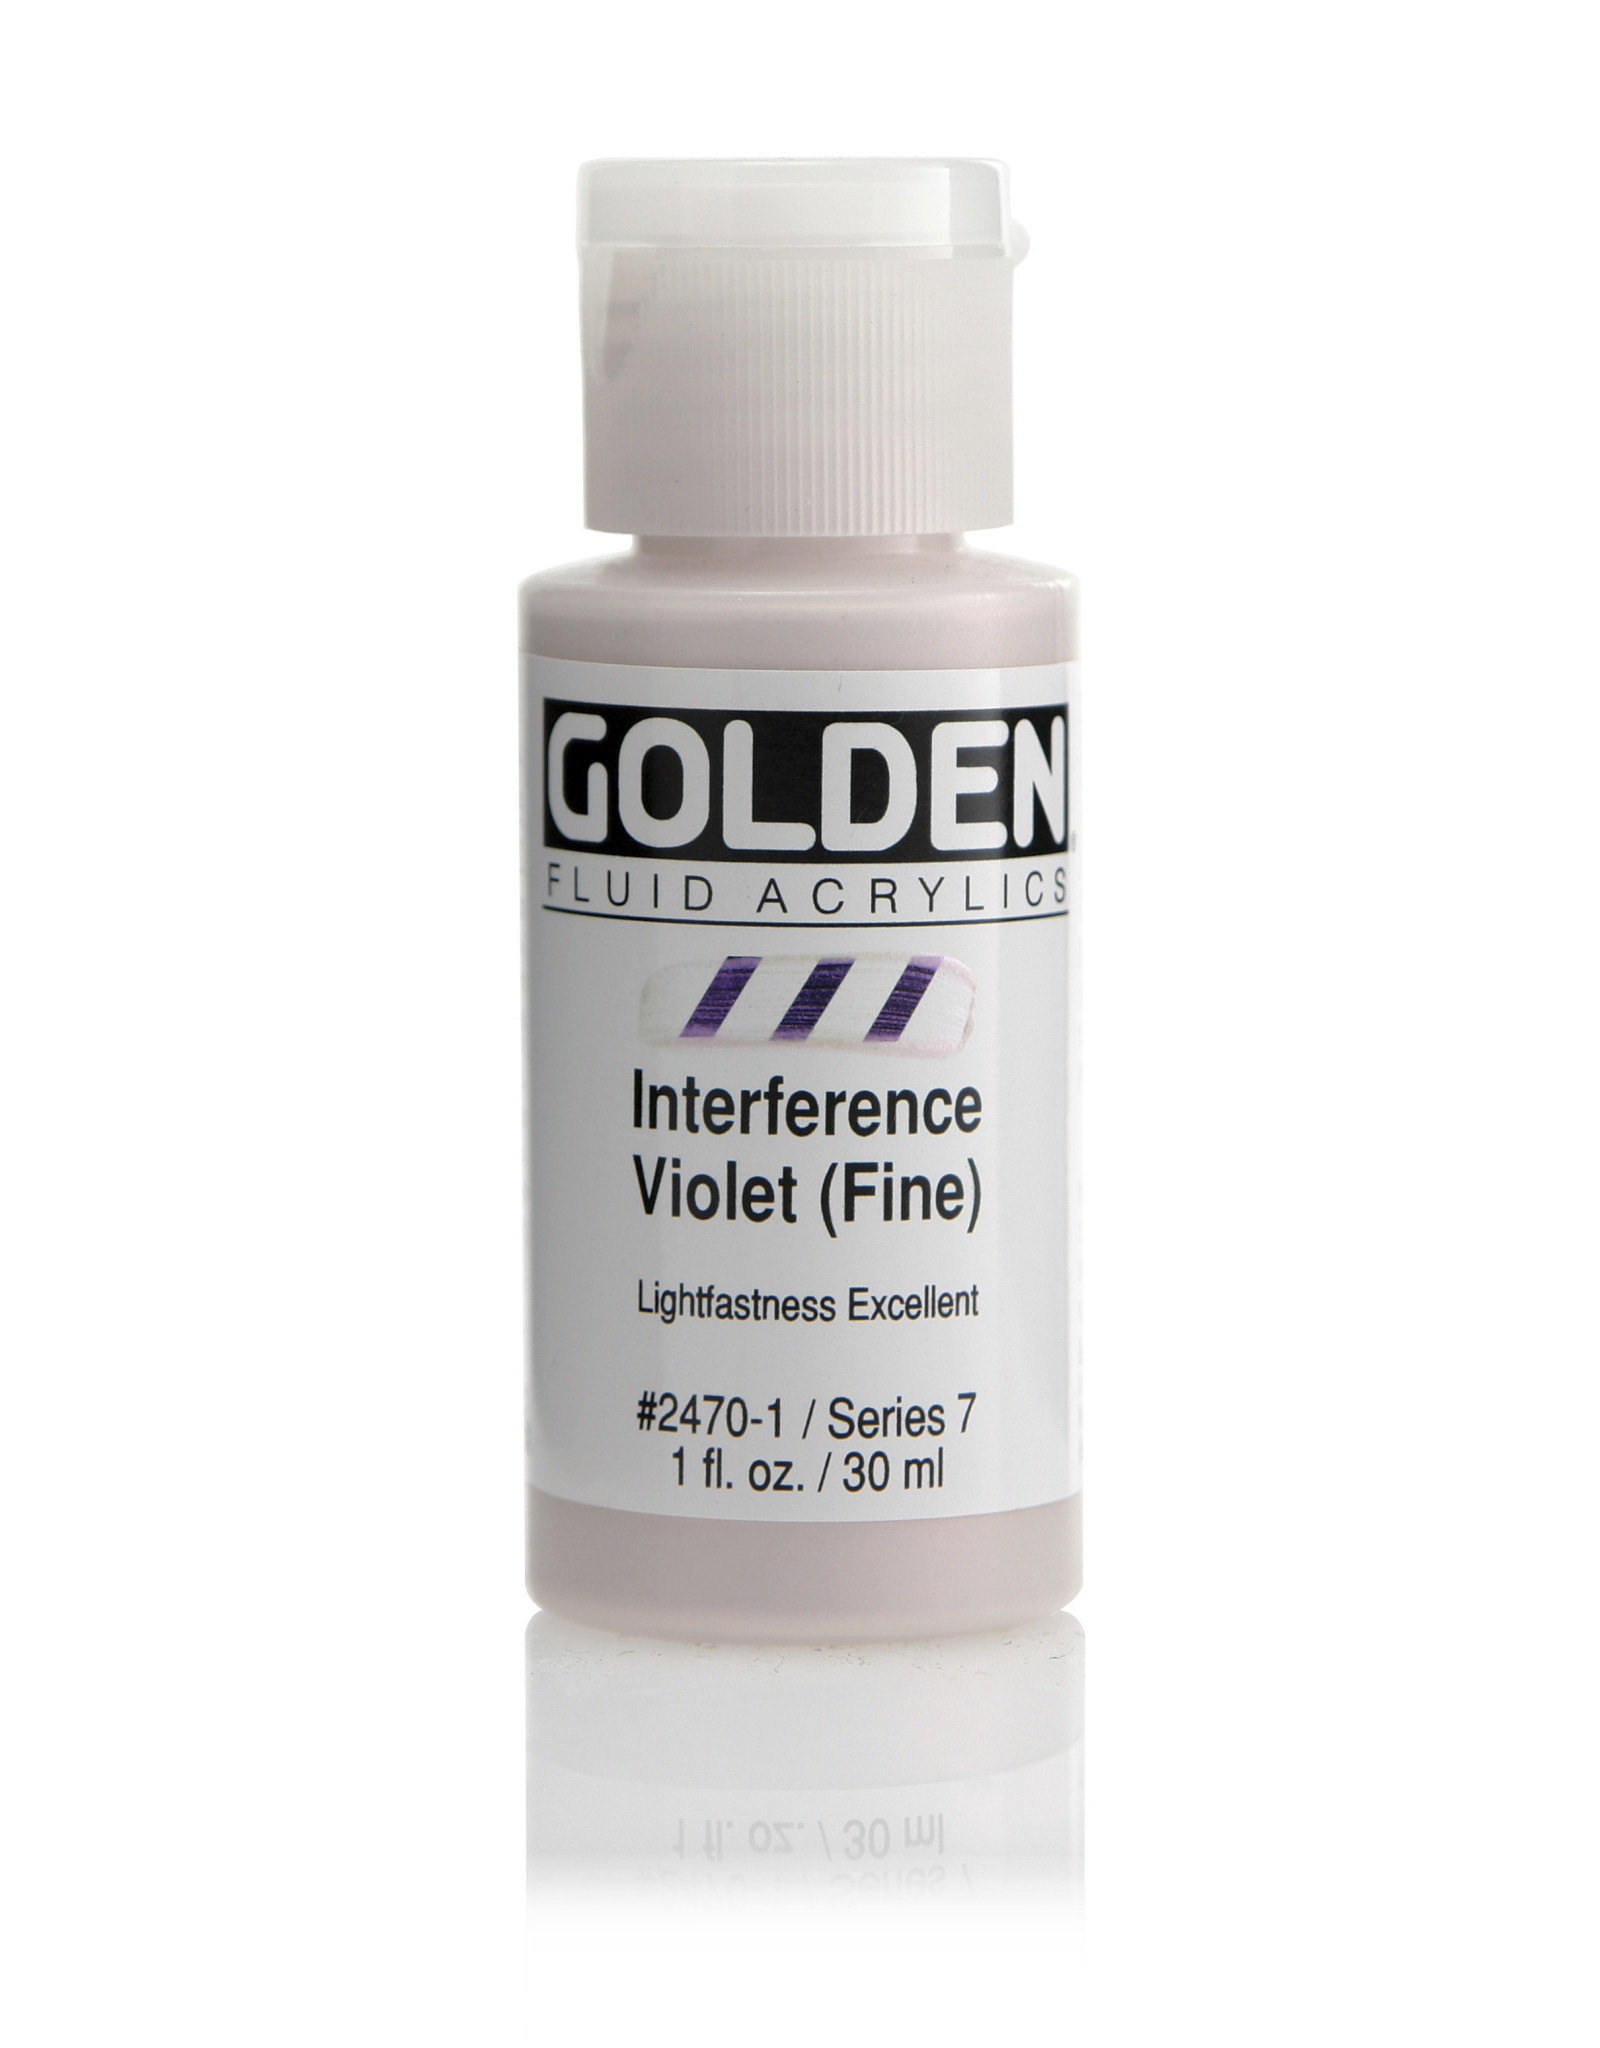 Golden Golden Fluid Acrylics, Interference Violet (Fine) 1oz Cylinder